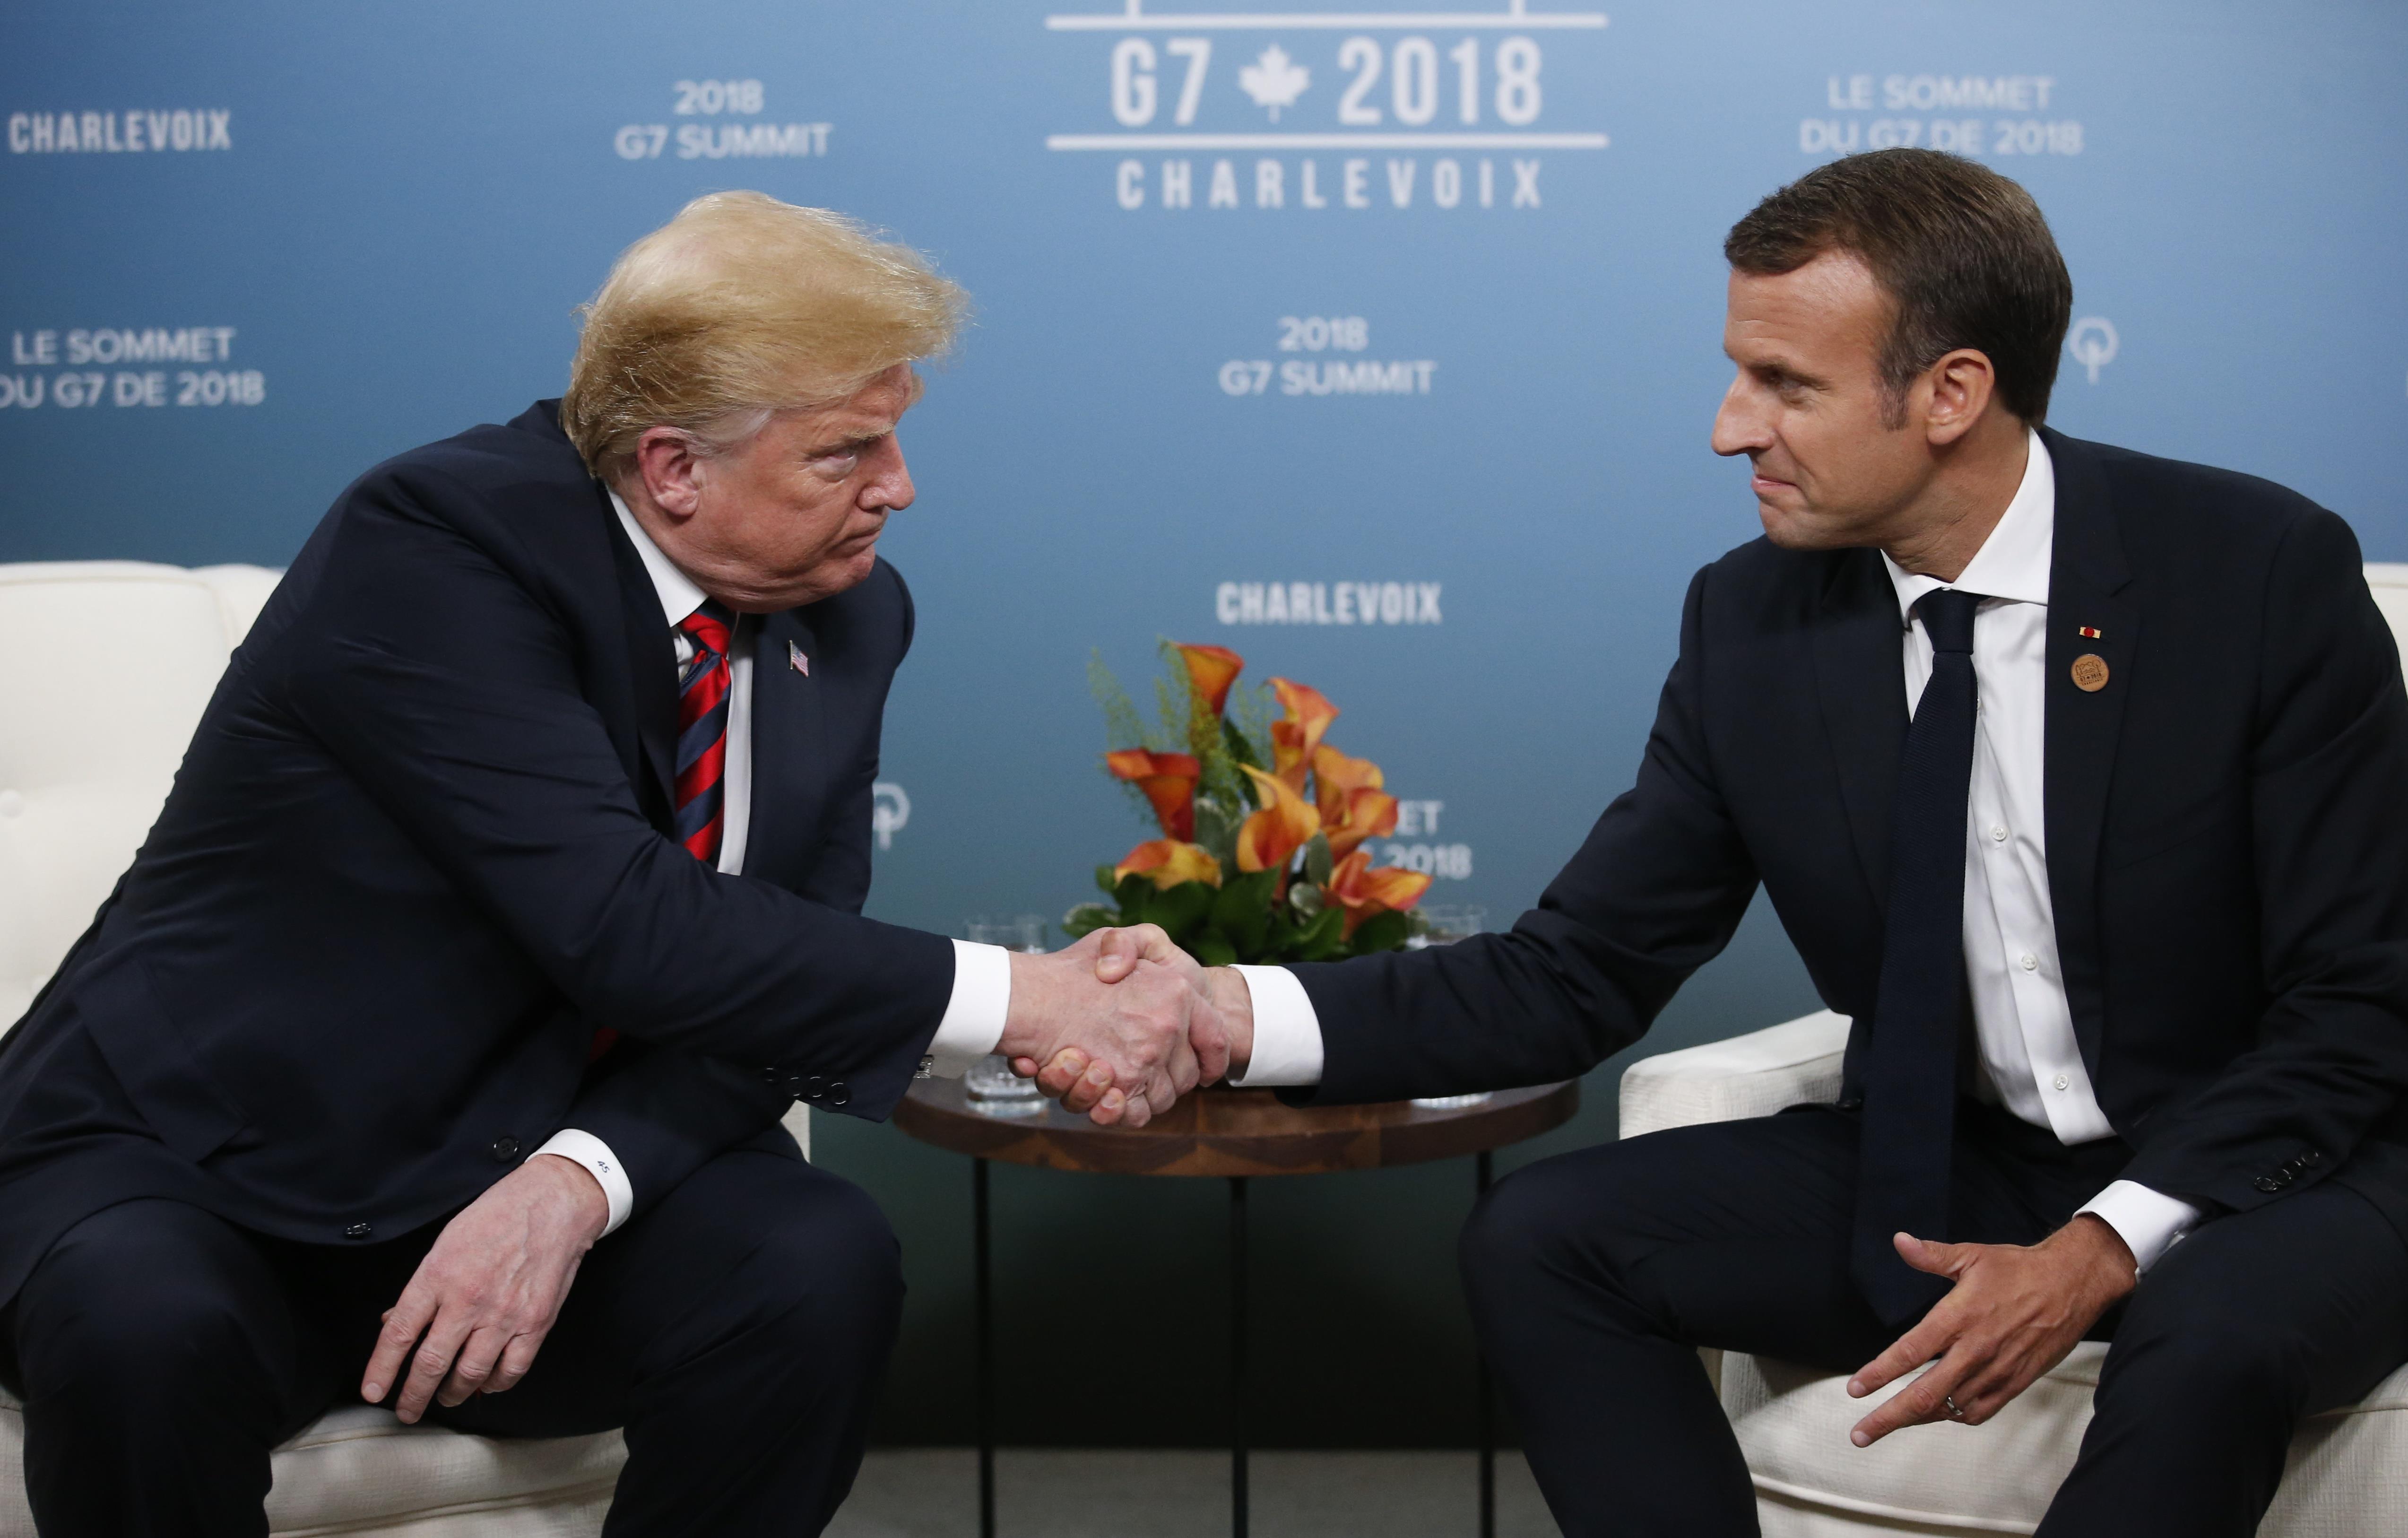 Tensión en el G7: Macron dejó su pulgar marcado tras un duro apretón de manos con Trump (Fotos)